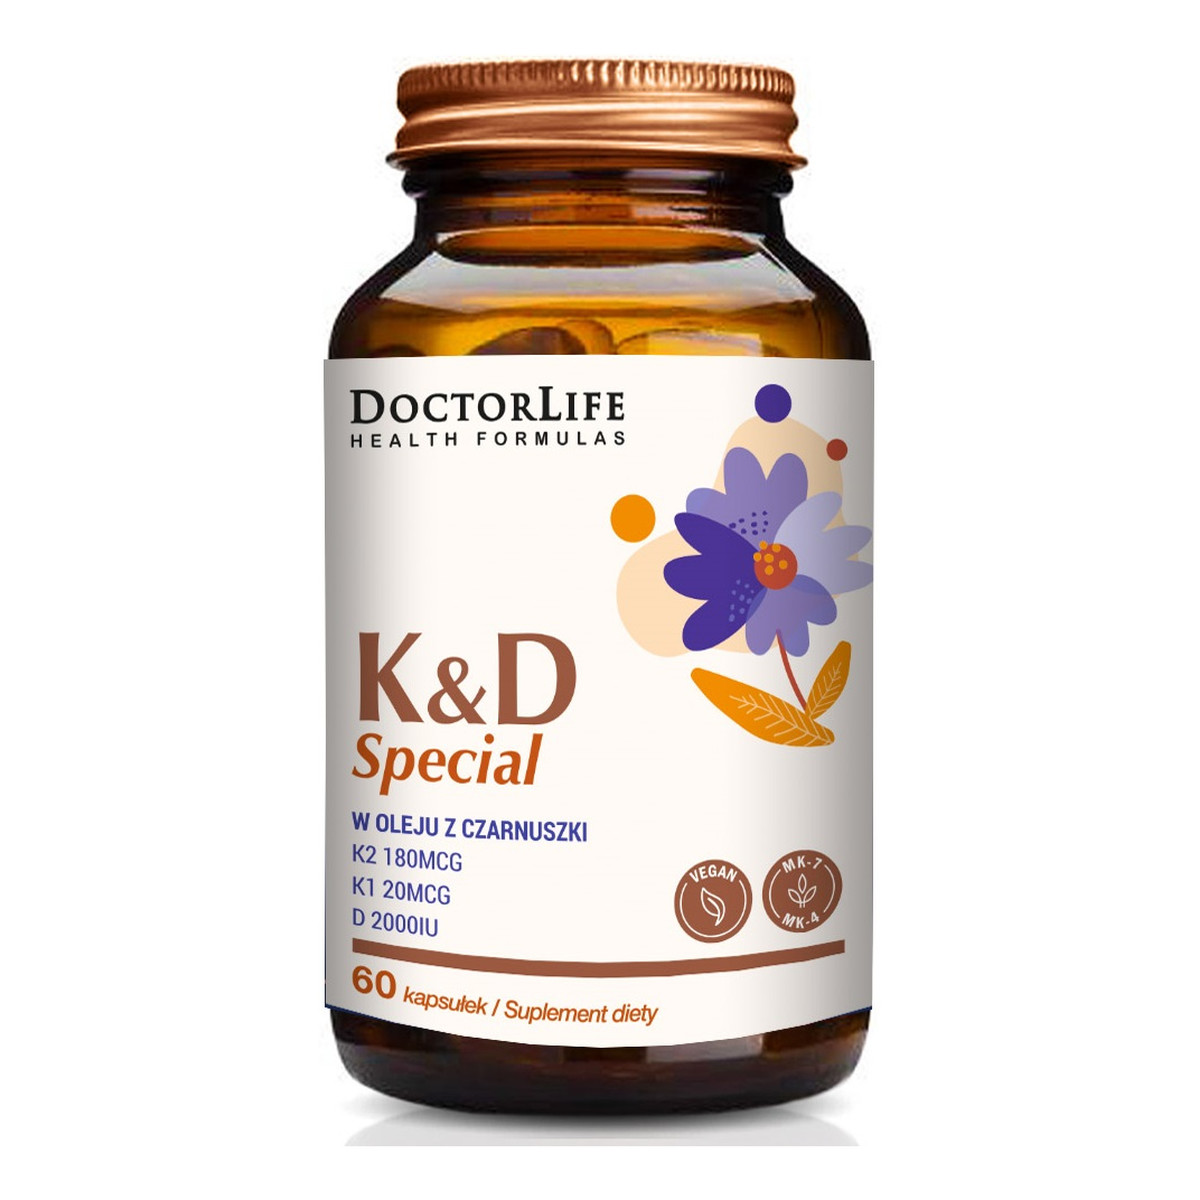 Doctor Life K & d special w oleju z czarnuszki suplement diety 60 kapsułek